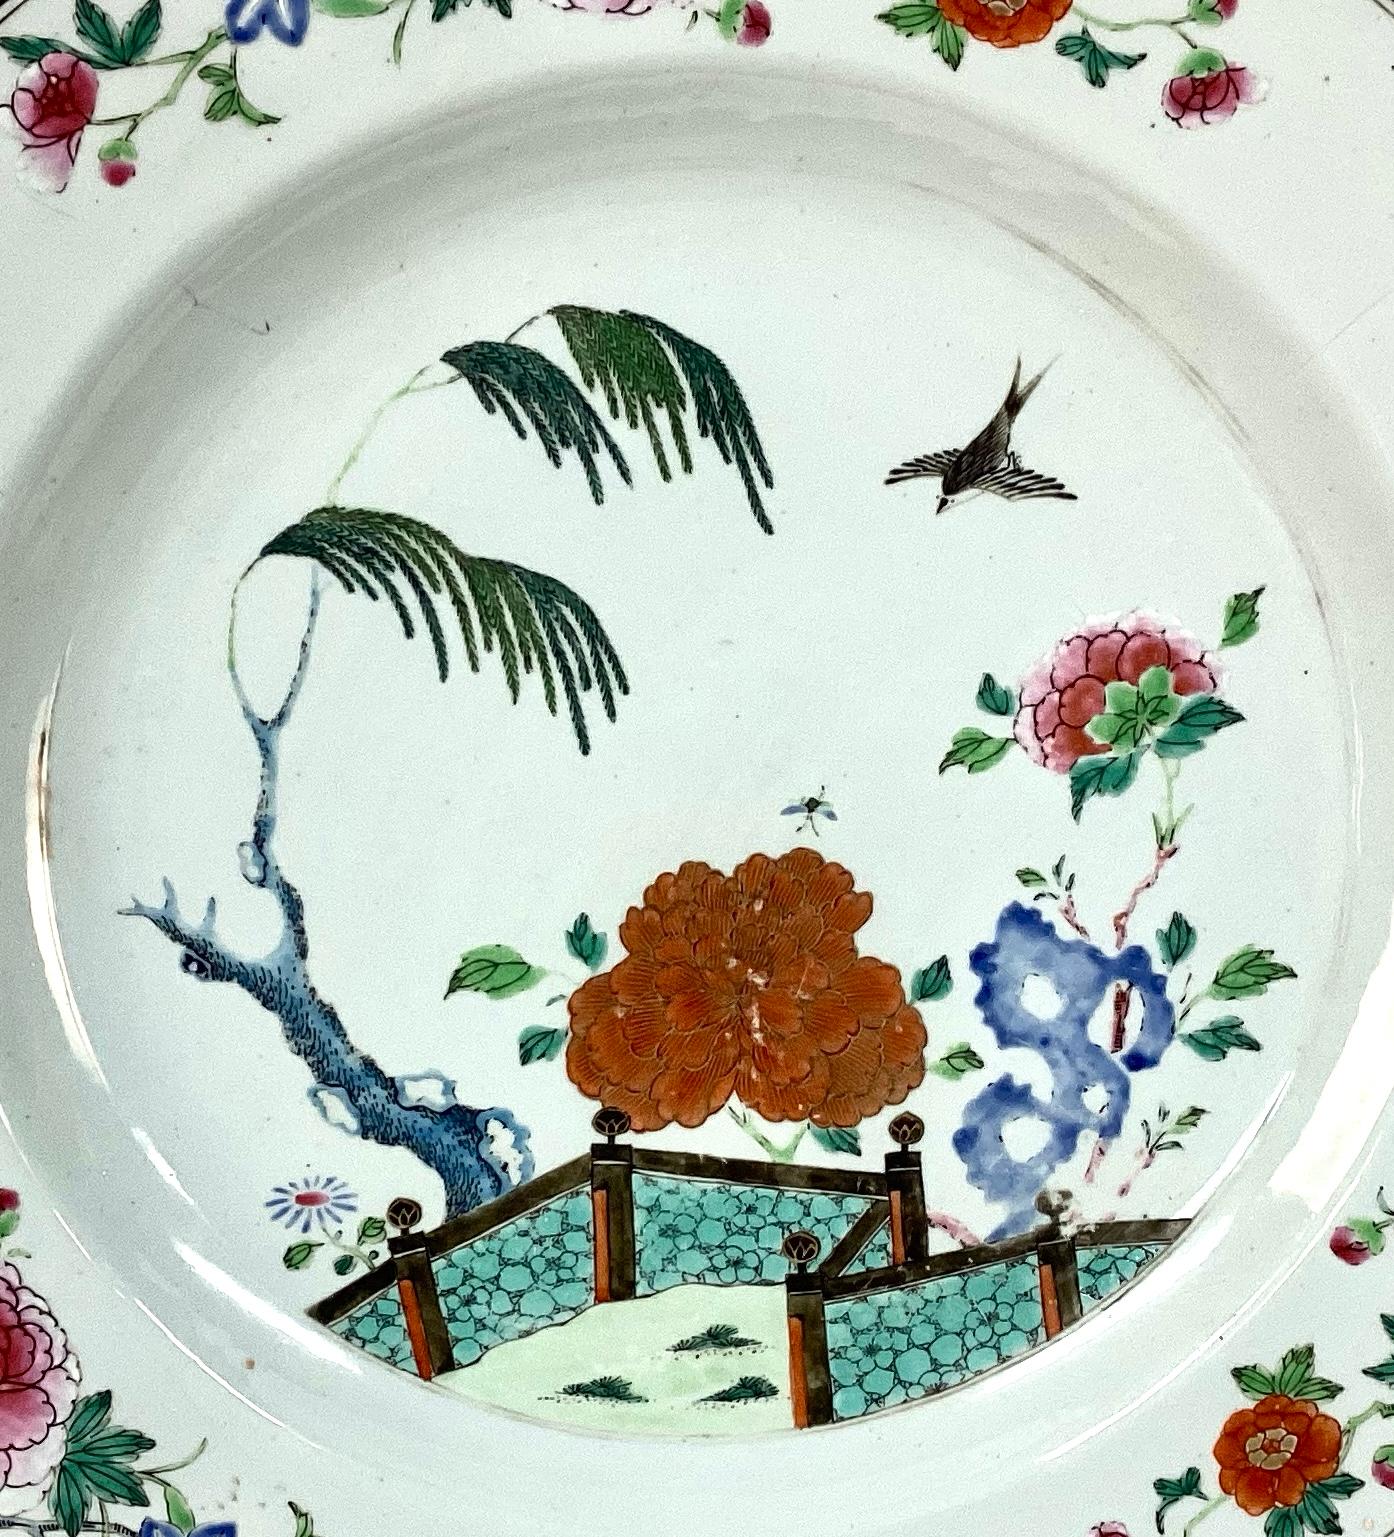 Grand plat en porcelaine de famille rose d'exportation chinoise Qing. Porcelaine blanche avec des oiseaux, des fleurs, des arbres et des paysages dans de magnifiques rouges, roses, verts et bleus. Le plateau est très grand et en excellent état. Il y